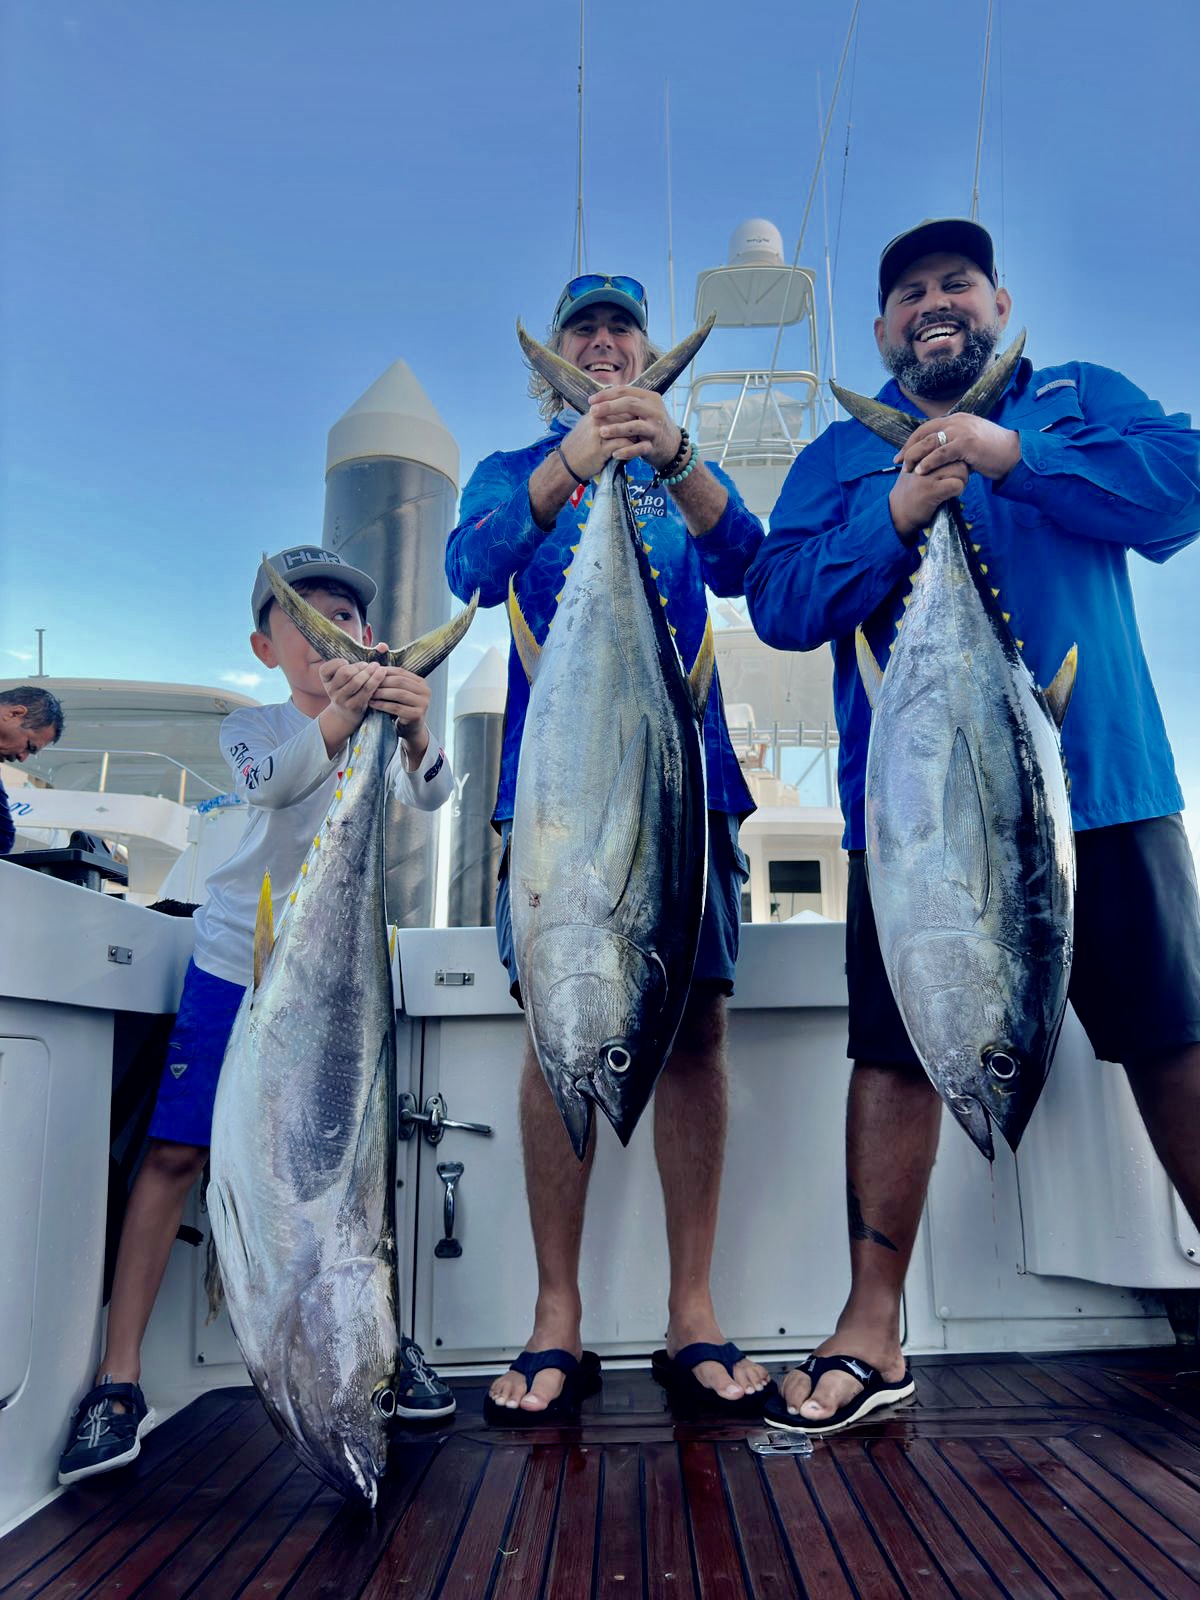 Yellowfin Tuna Fishing in Costa Rica - Tuna sportfishing